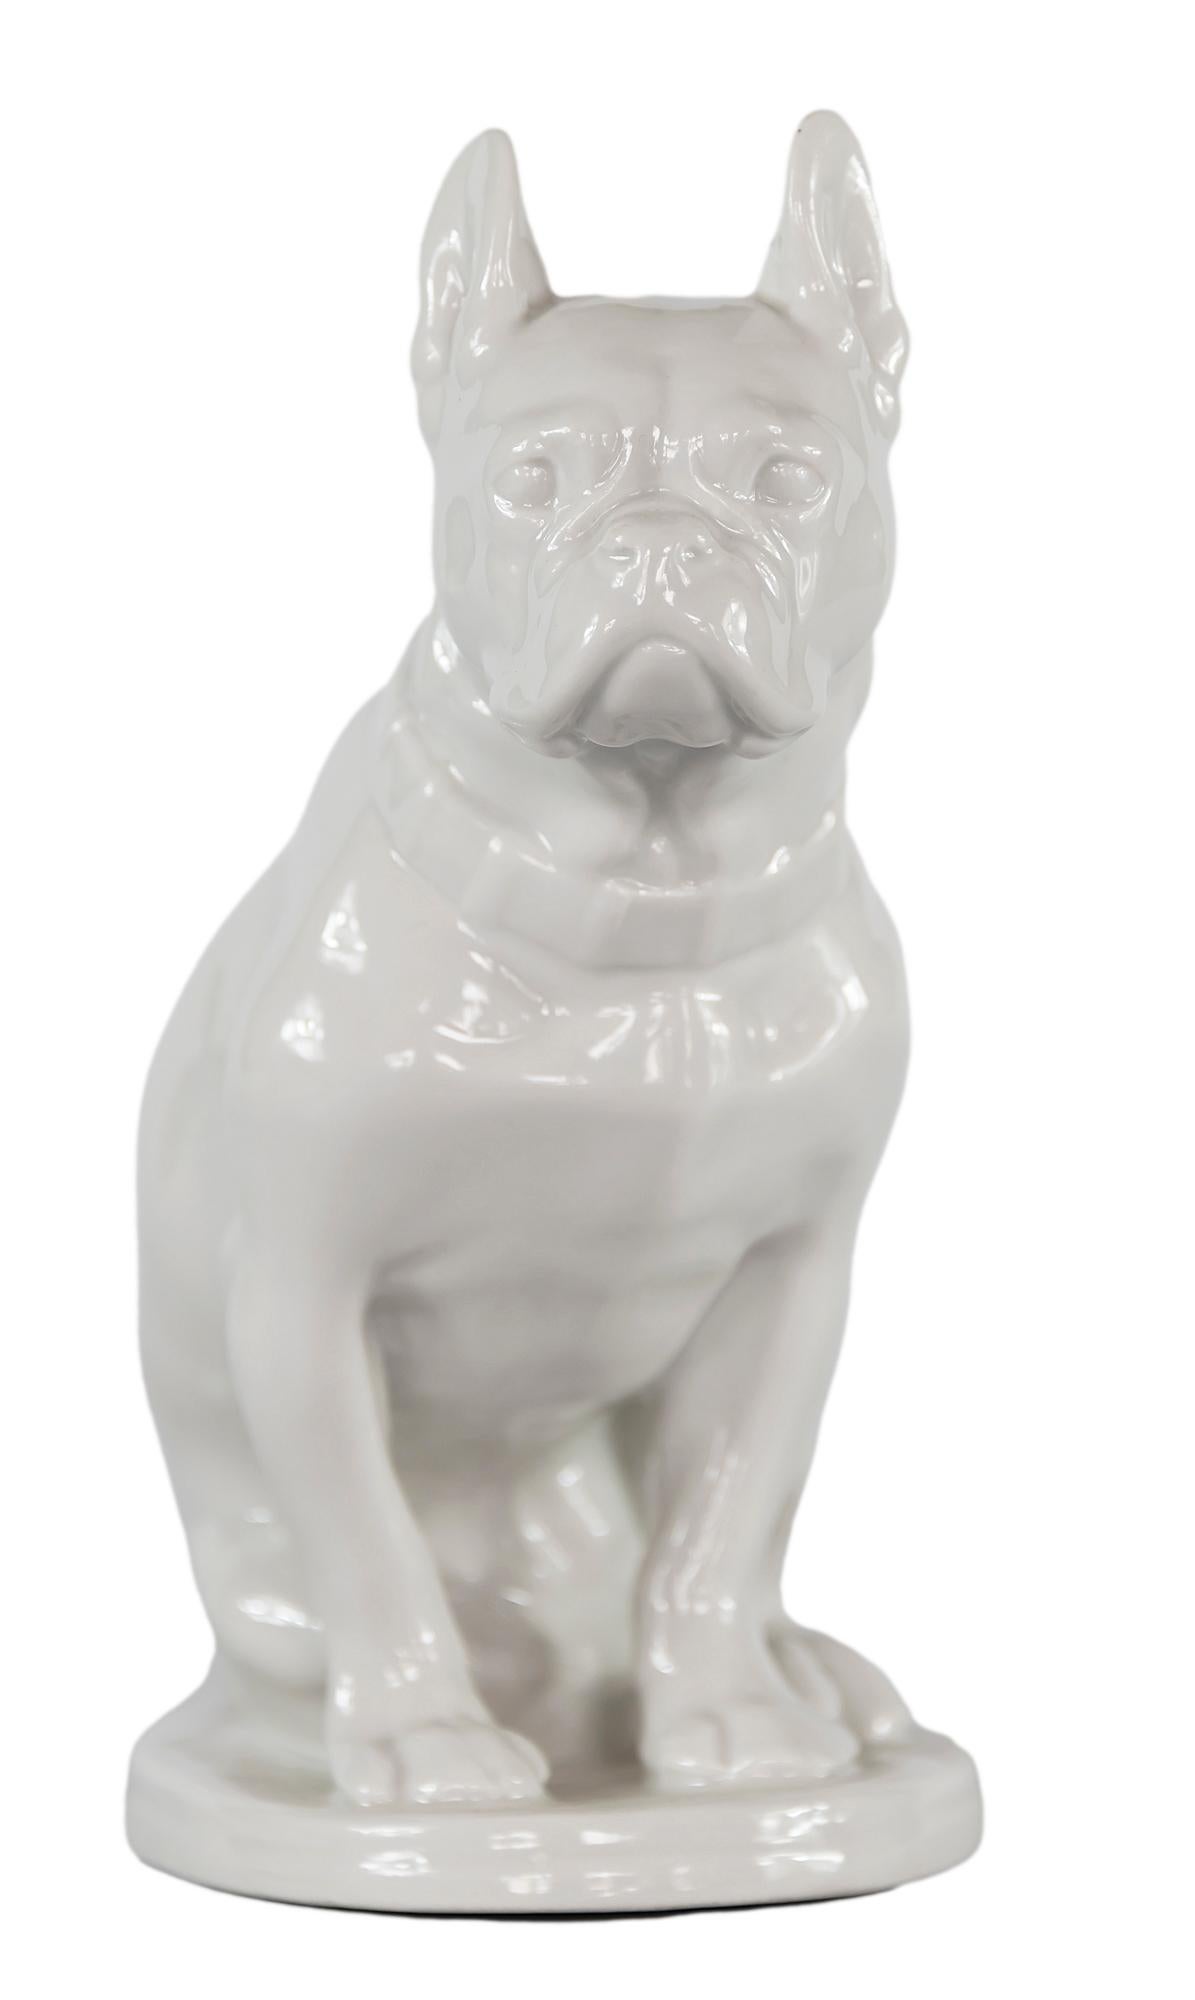 Vintage weiß glasierte Porzellan Bulldogge Figur von russischen Lomonosov Porzellanfabrik LFZ.
Markiert auf der Unterseite.